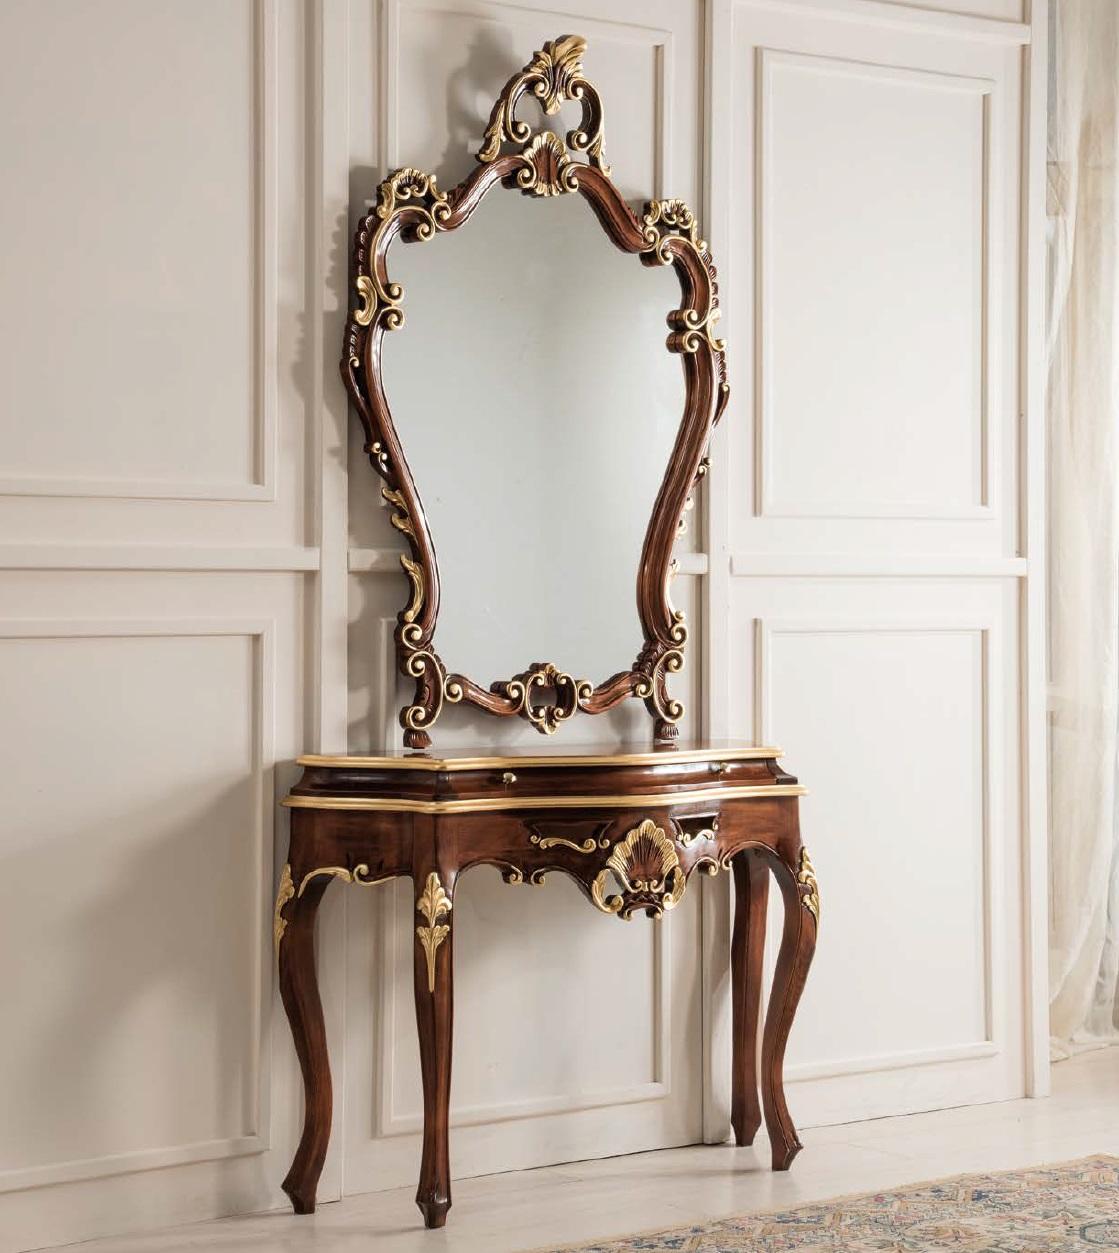 Konsolentisch Spiegel Sideboard Set Neu Holz Italienische Möbel Stil StileElisa